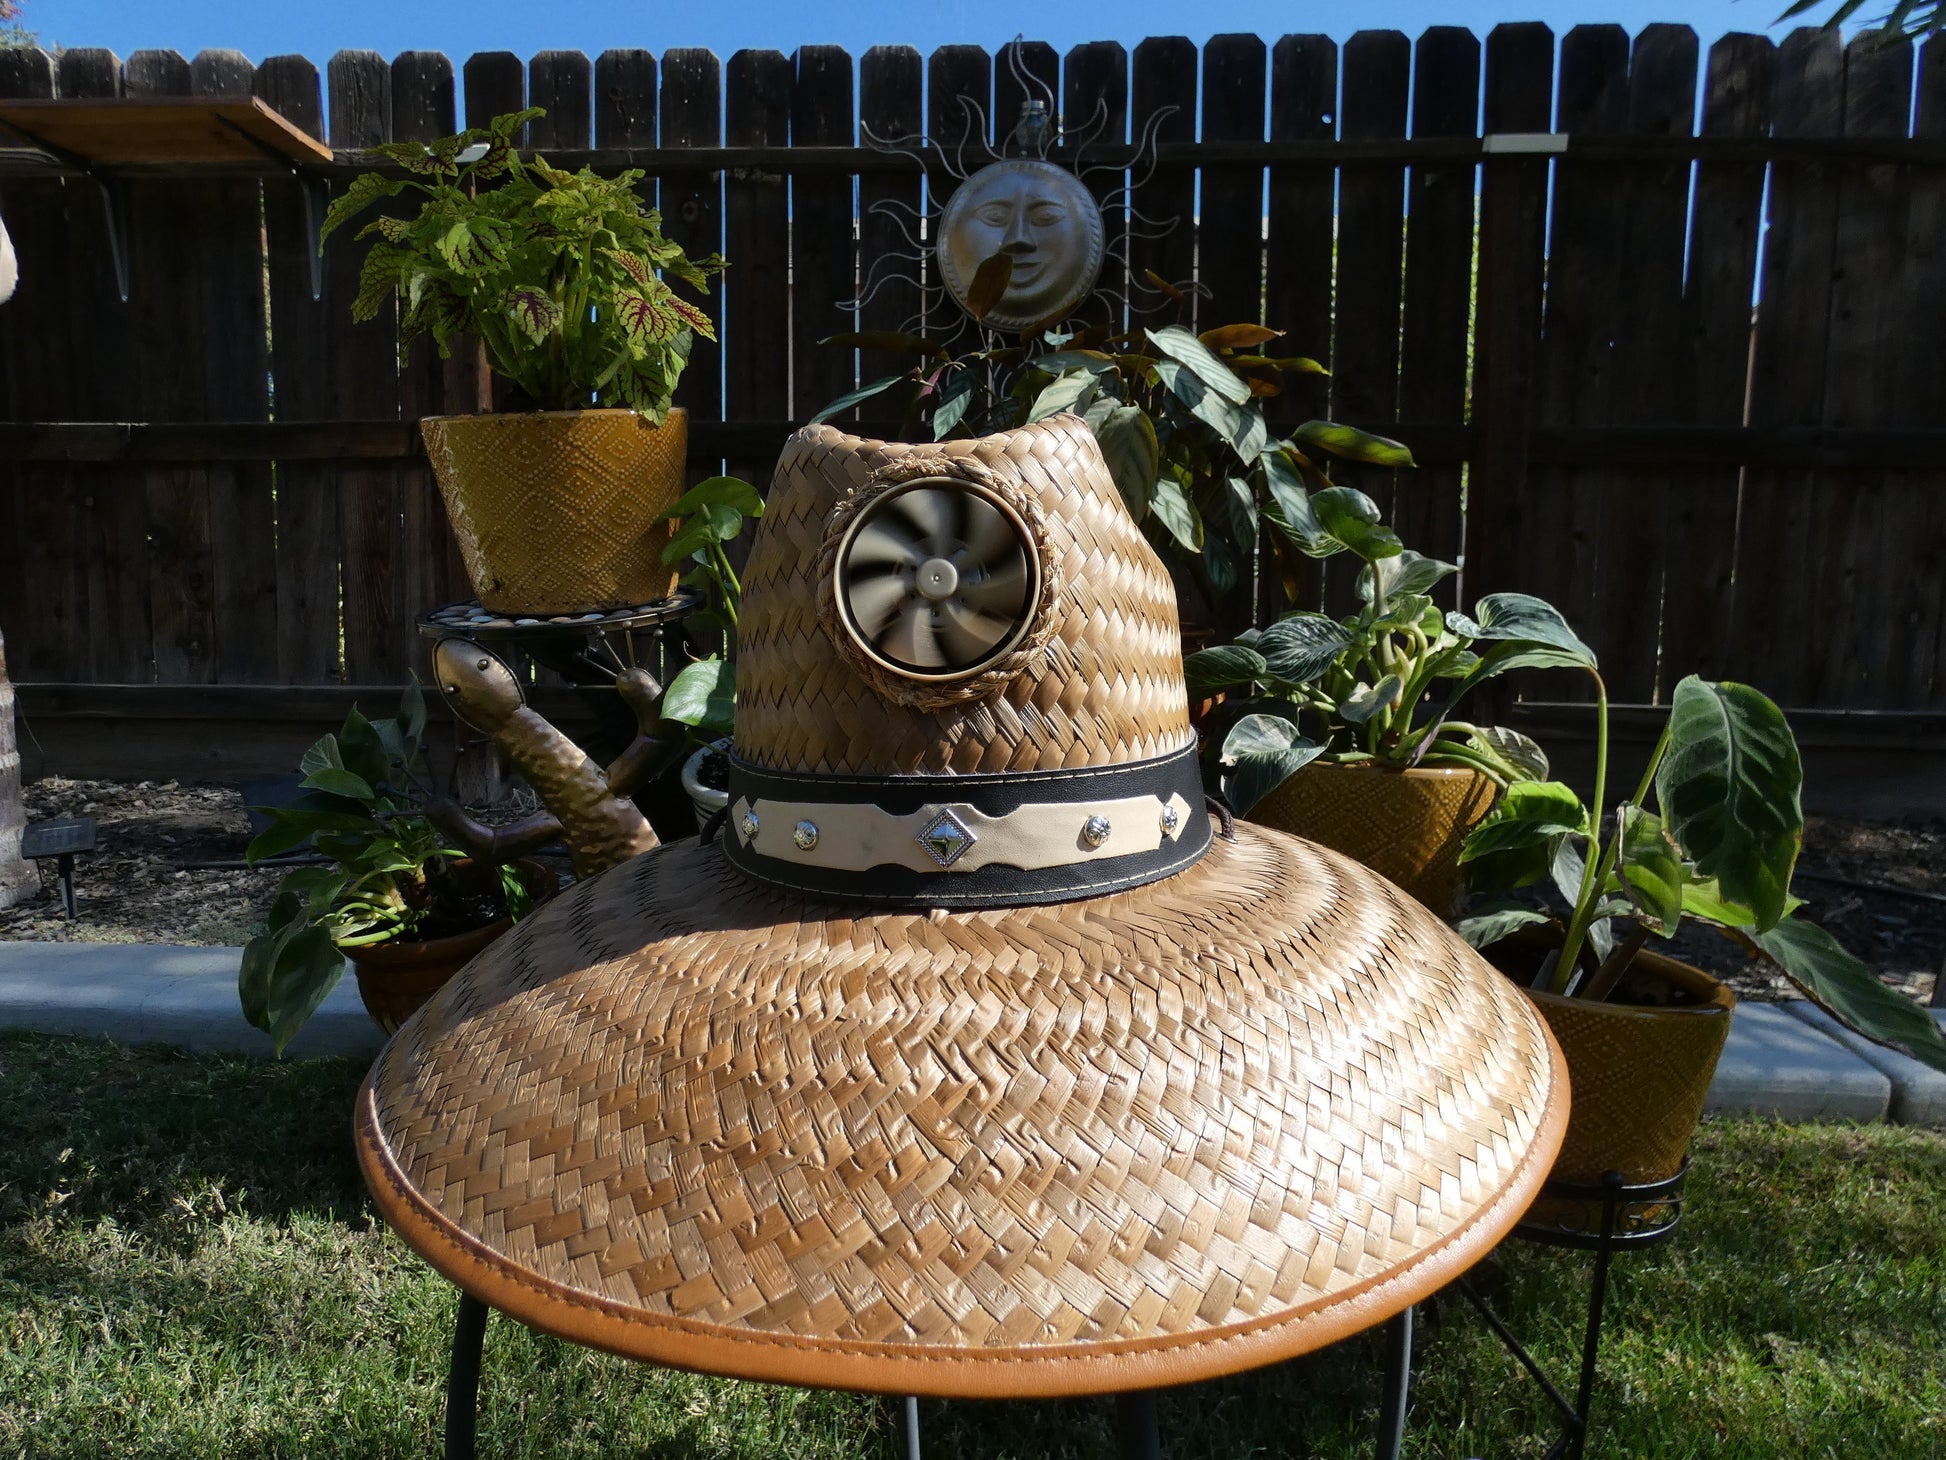 Kool Breeze Solar Men's Thurman Straw Hat (Band) – Kool Breeze Solar Hats